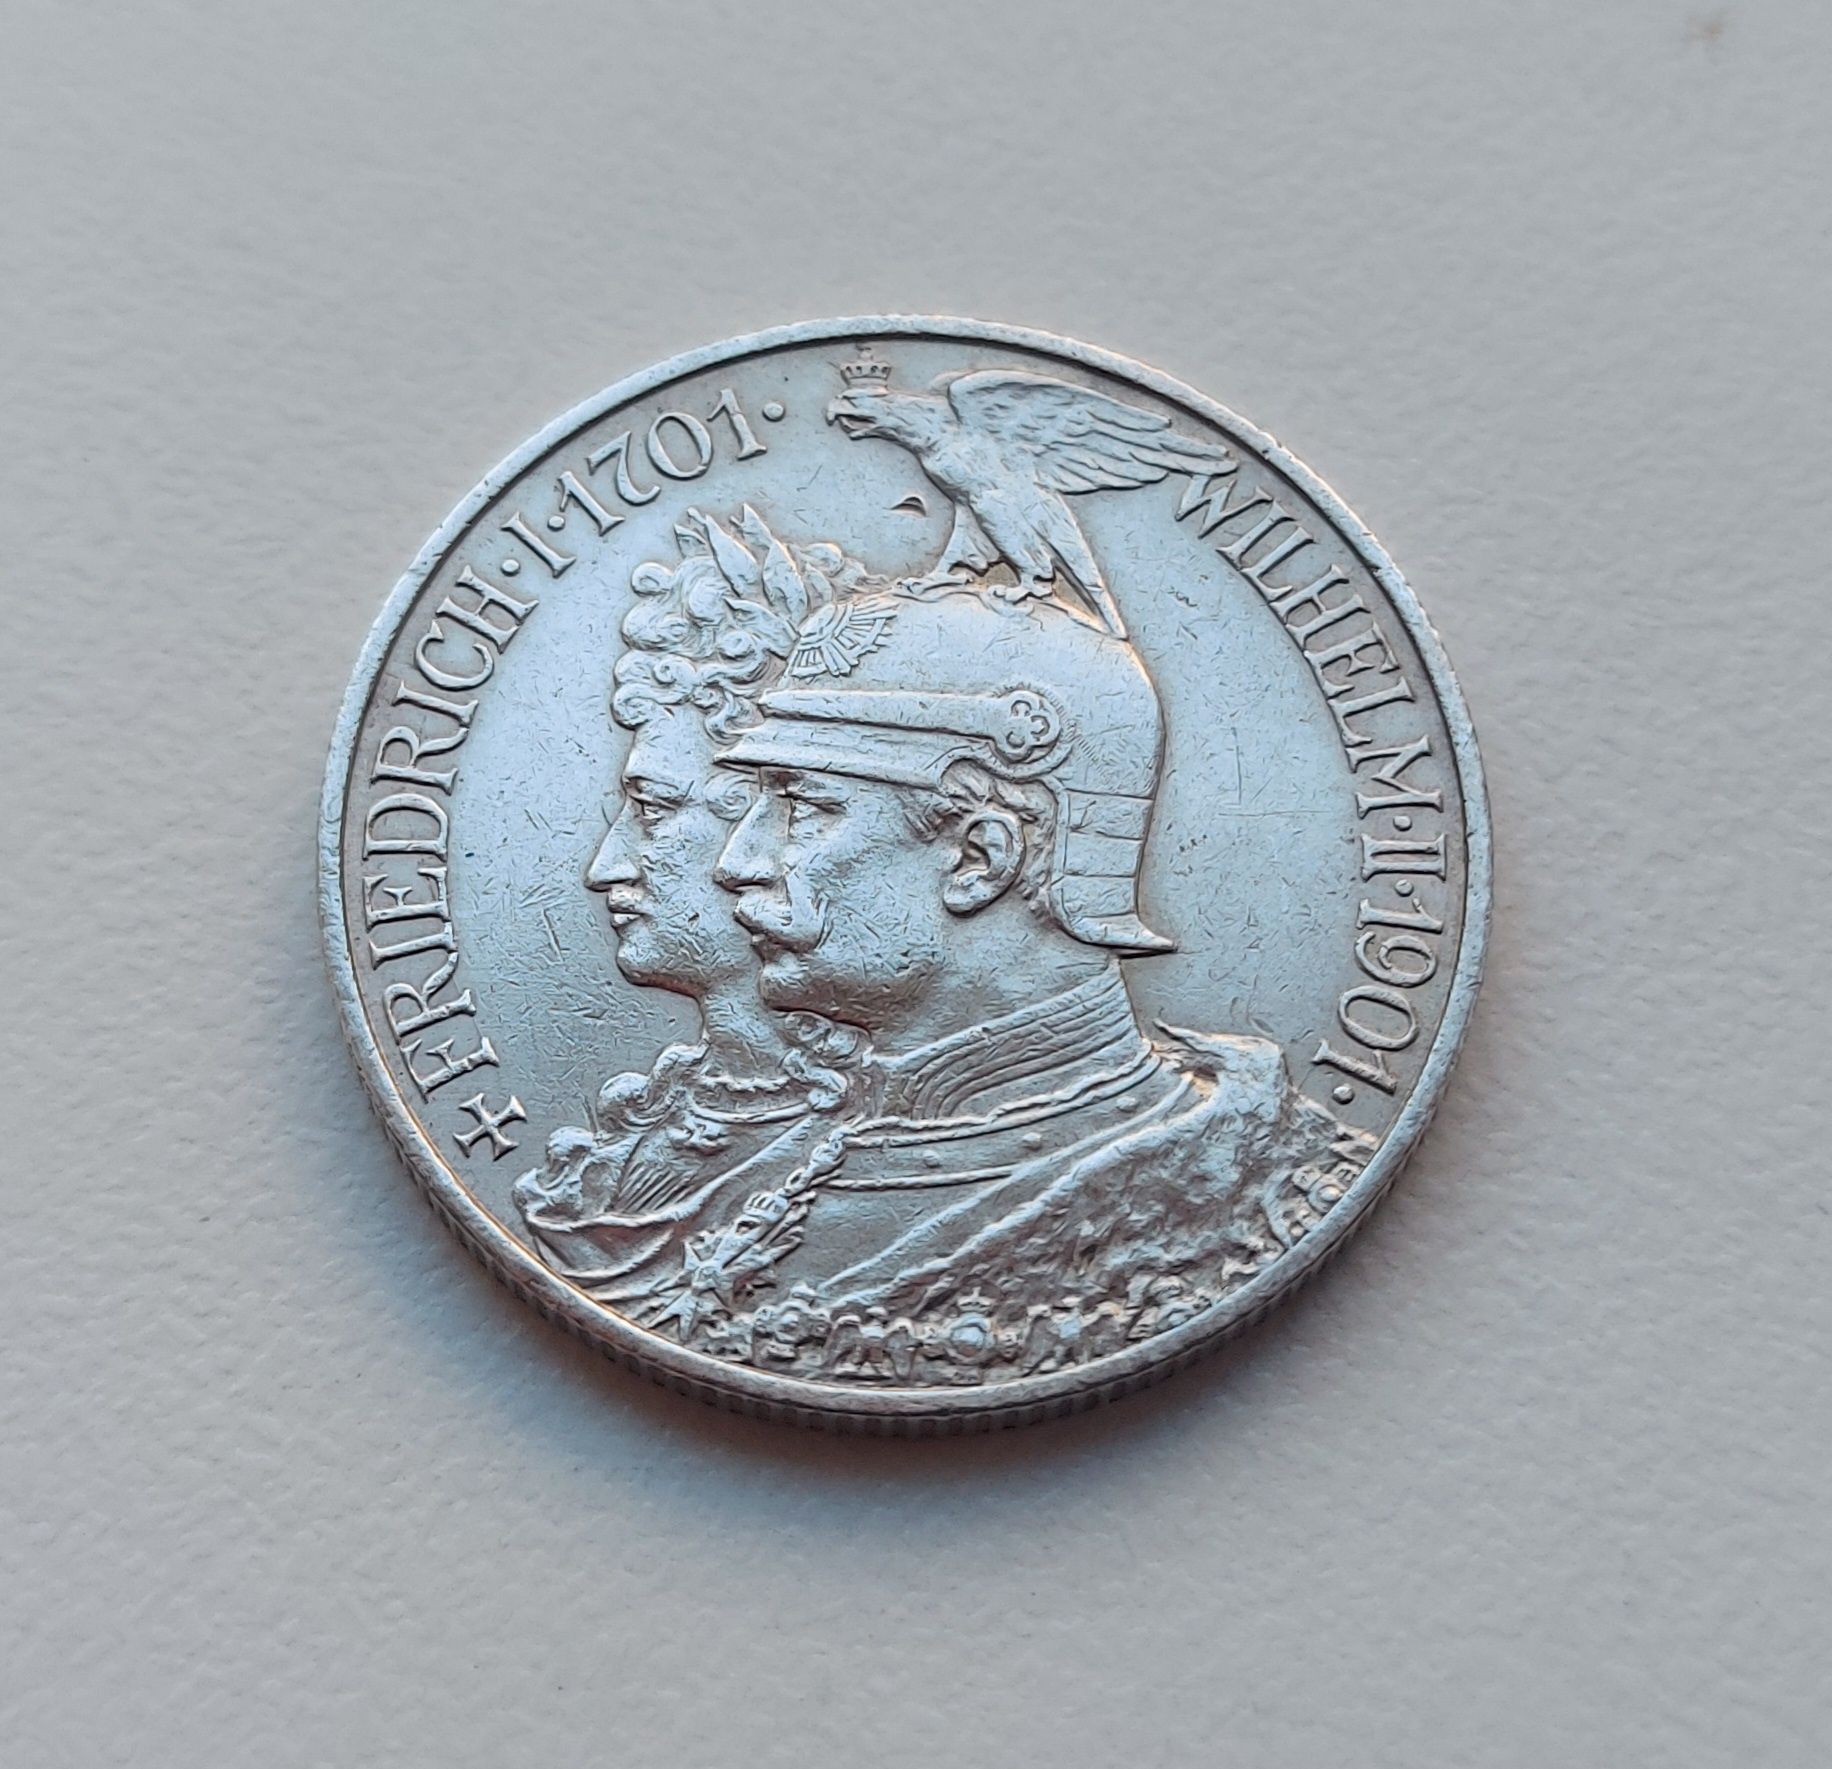 Германская империя 2 марки 1901 г.
200 лет Пруссии серебро